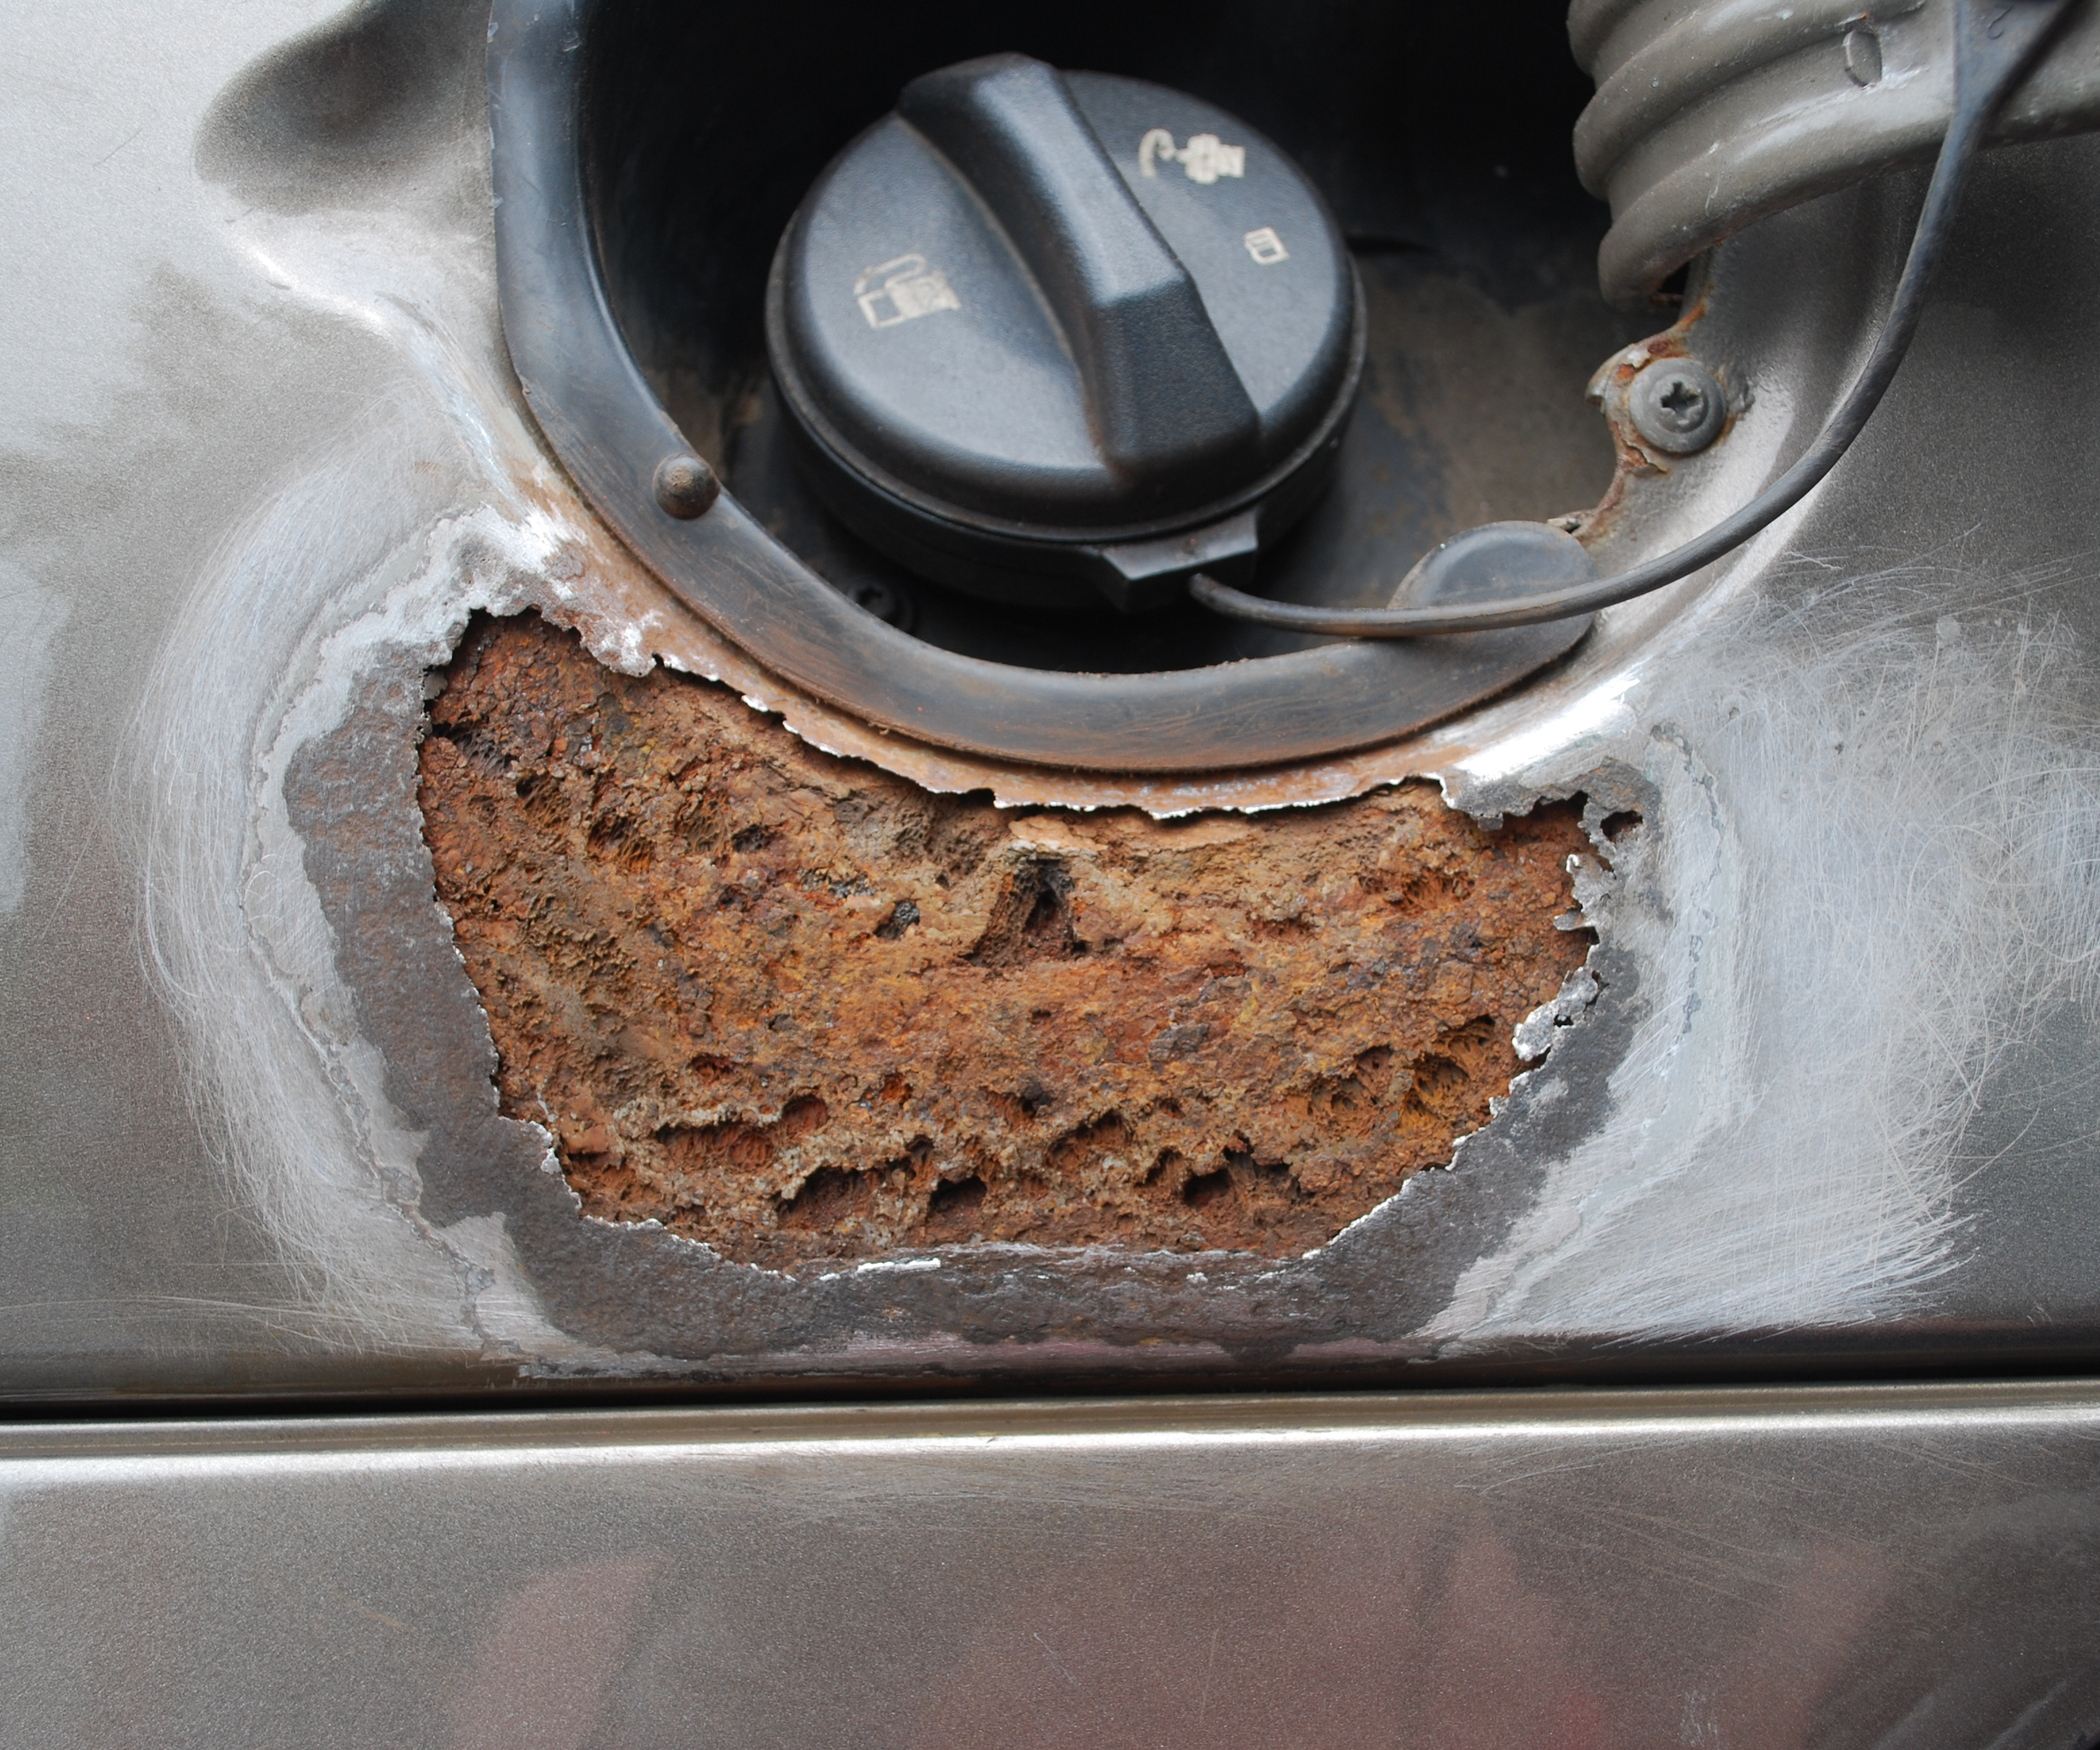 Repairing a Rust Hole in a Car